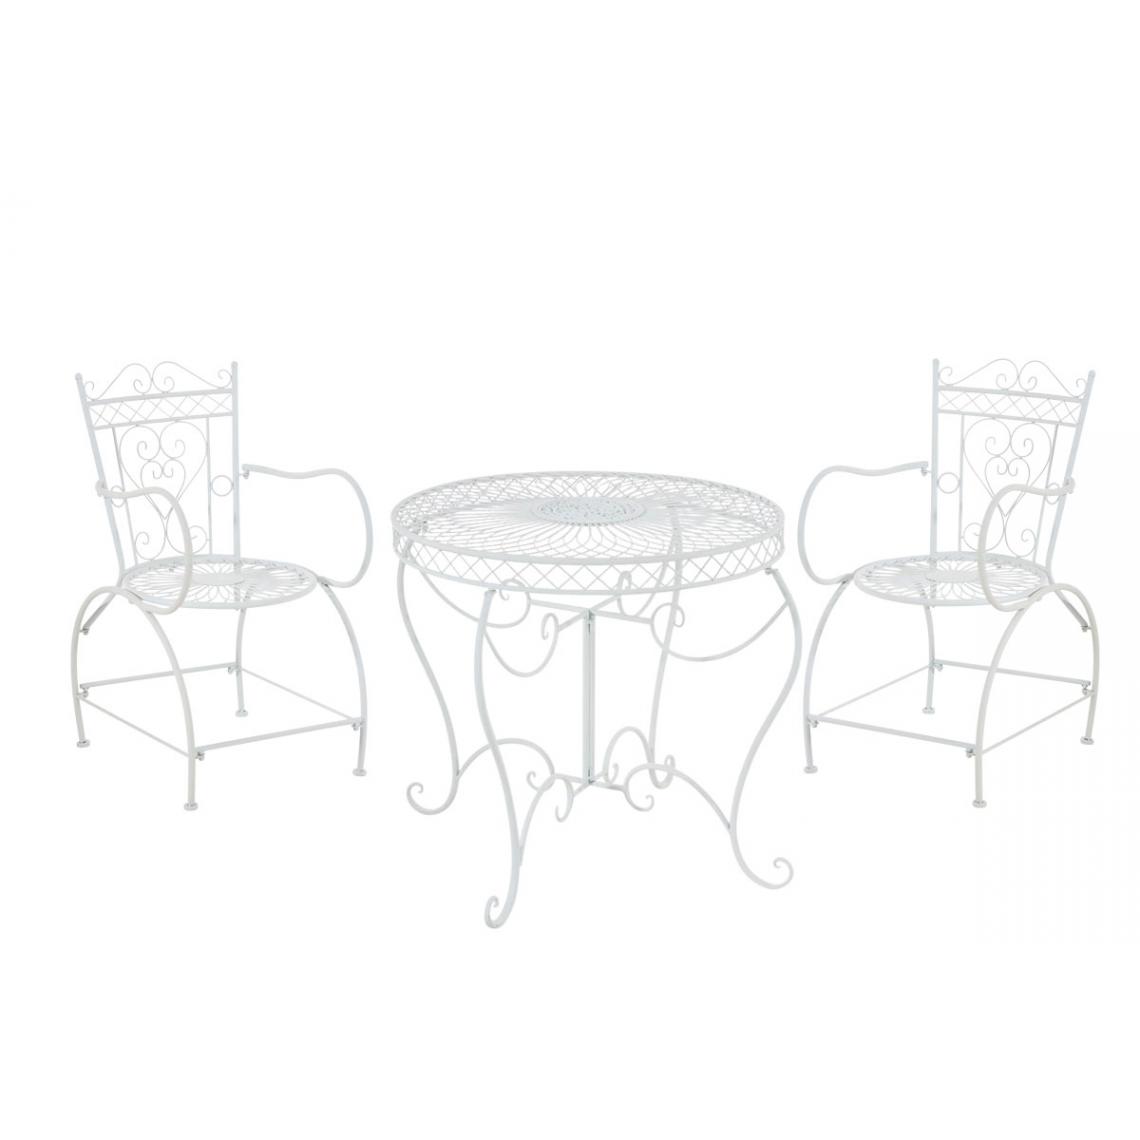 Icaverne - Contemporain Groupe de sièges edition Djibouti couleur blanc - Ensembles tables et chaises